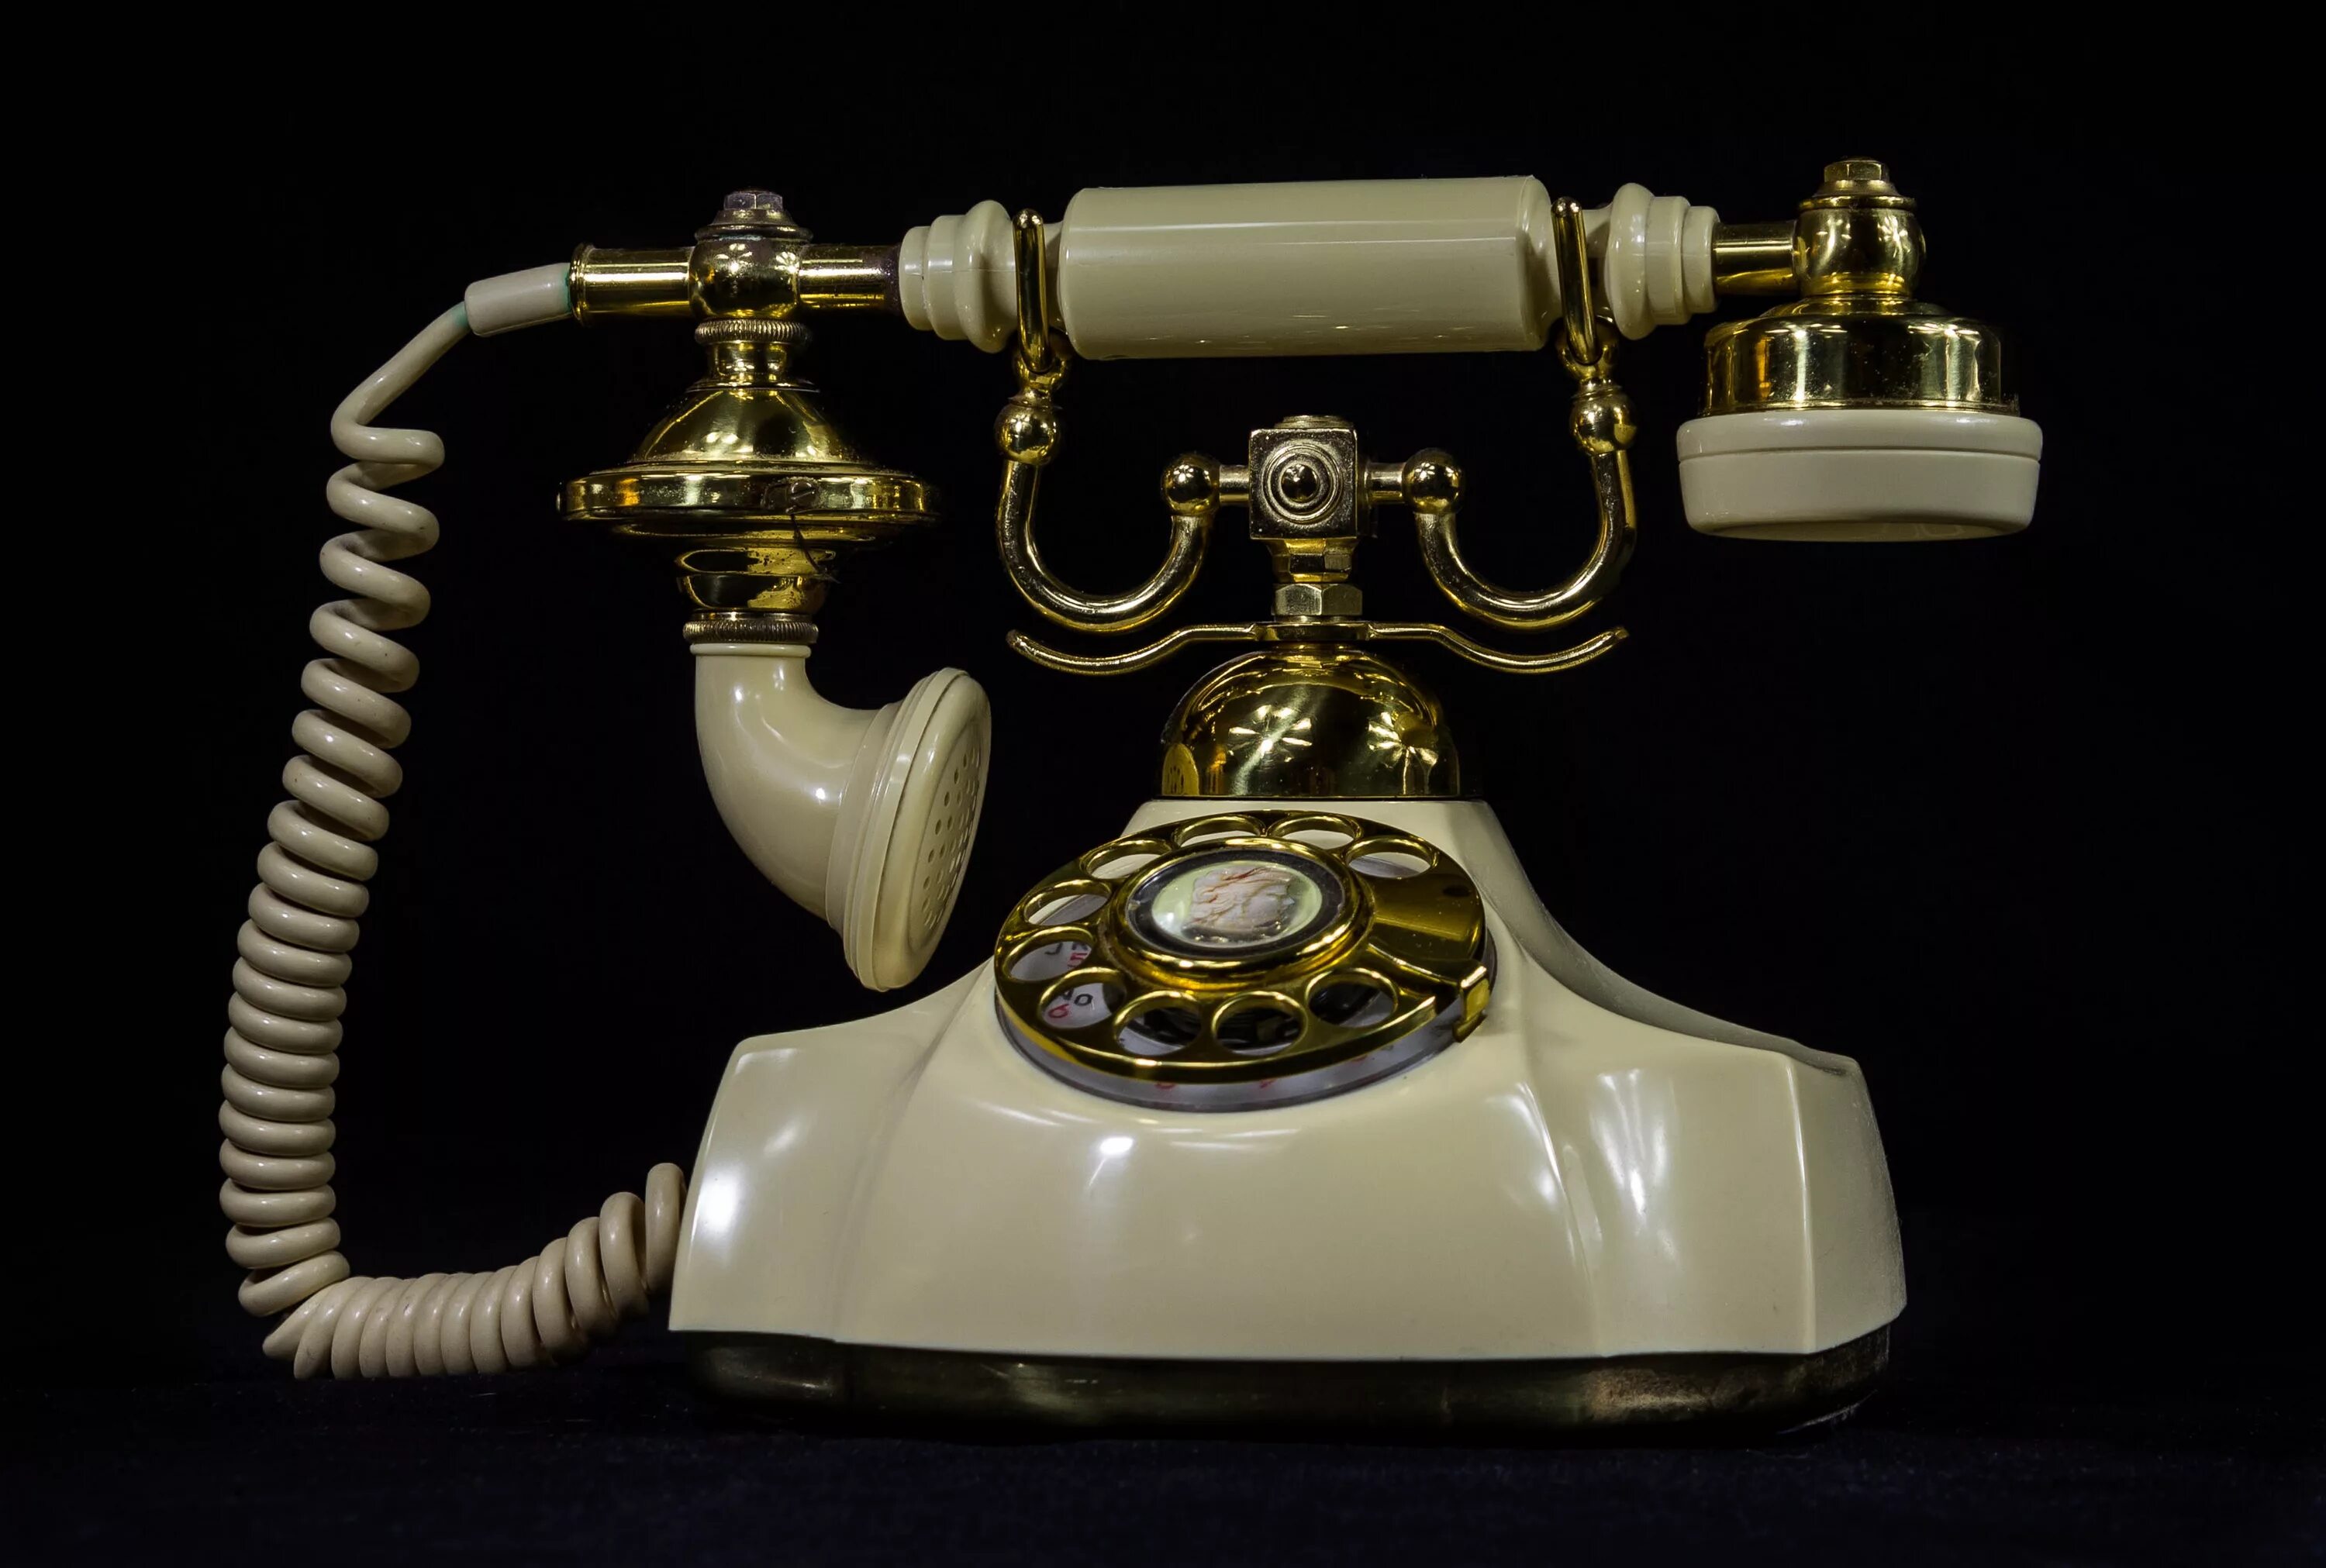 Изображения старого телефона. Старинный телефон. Телефонный аппарат стационарный. Старинный телефонный аппарат. Телефонный аппарат ретро.